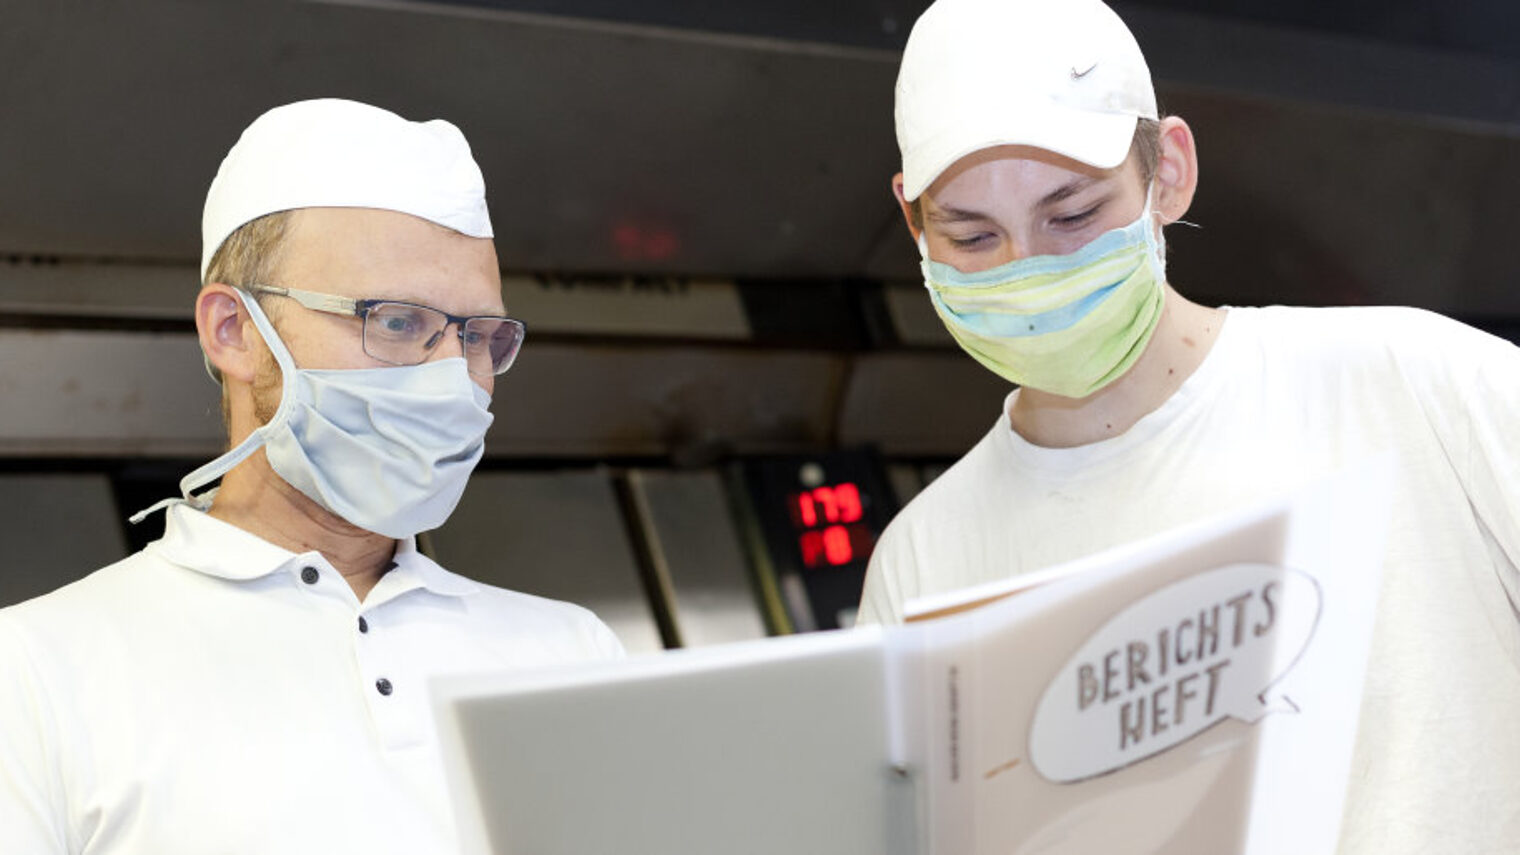 Zwei Männer in weißer Arbeitskleidung der Bäcker und Mund-Nasen-Schutz sehen in einen Ordner mit Aufschrift "Berichtsheft".